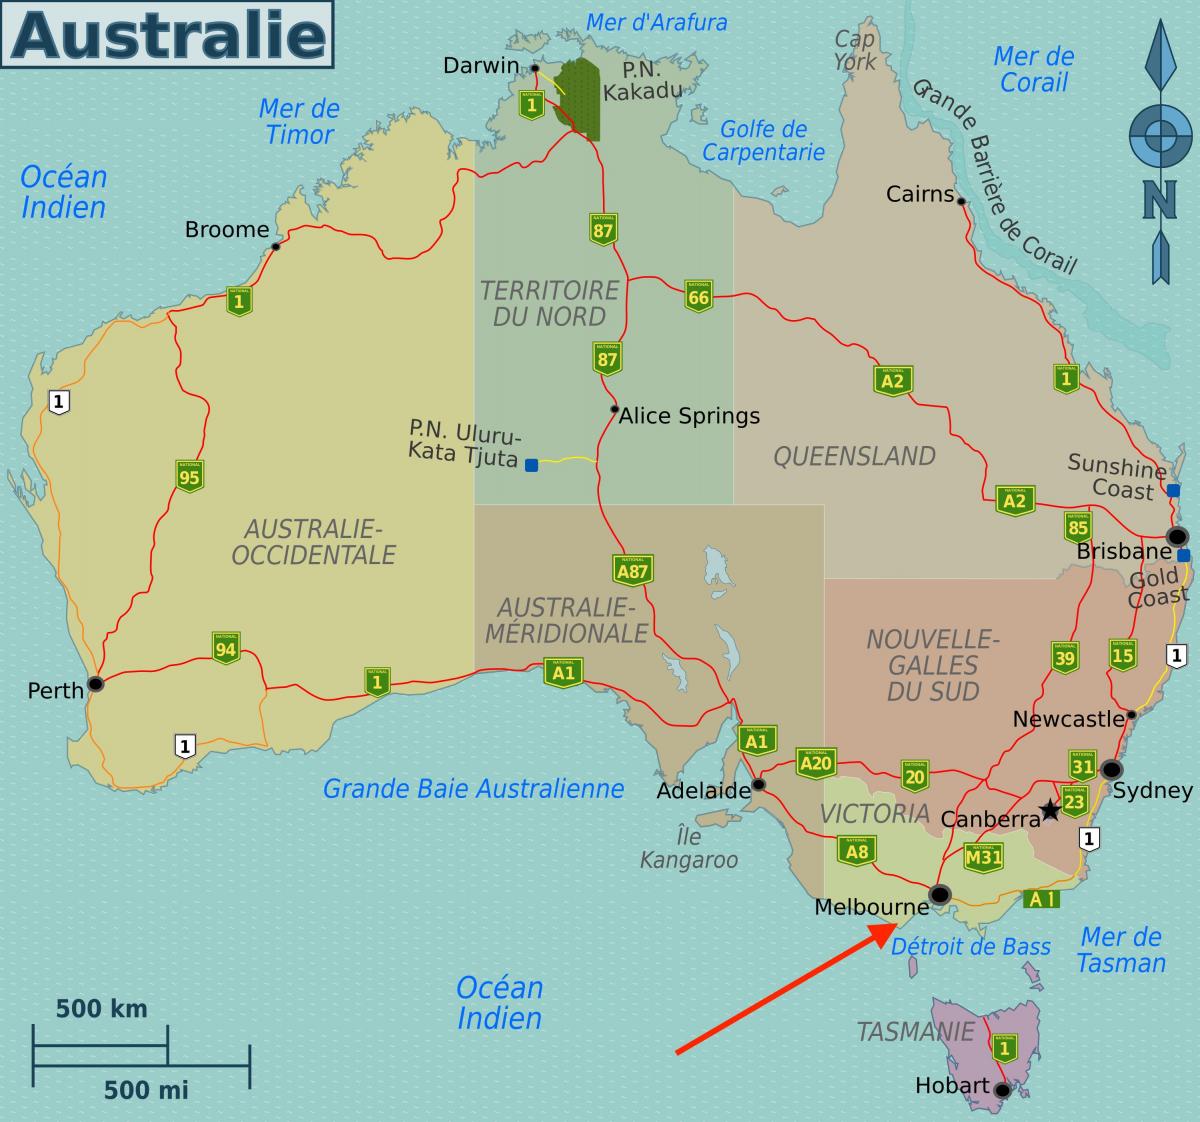 Melbourne on Victoria - Australia map